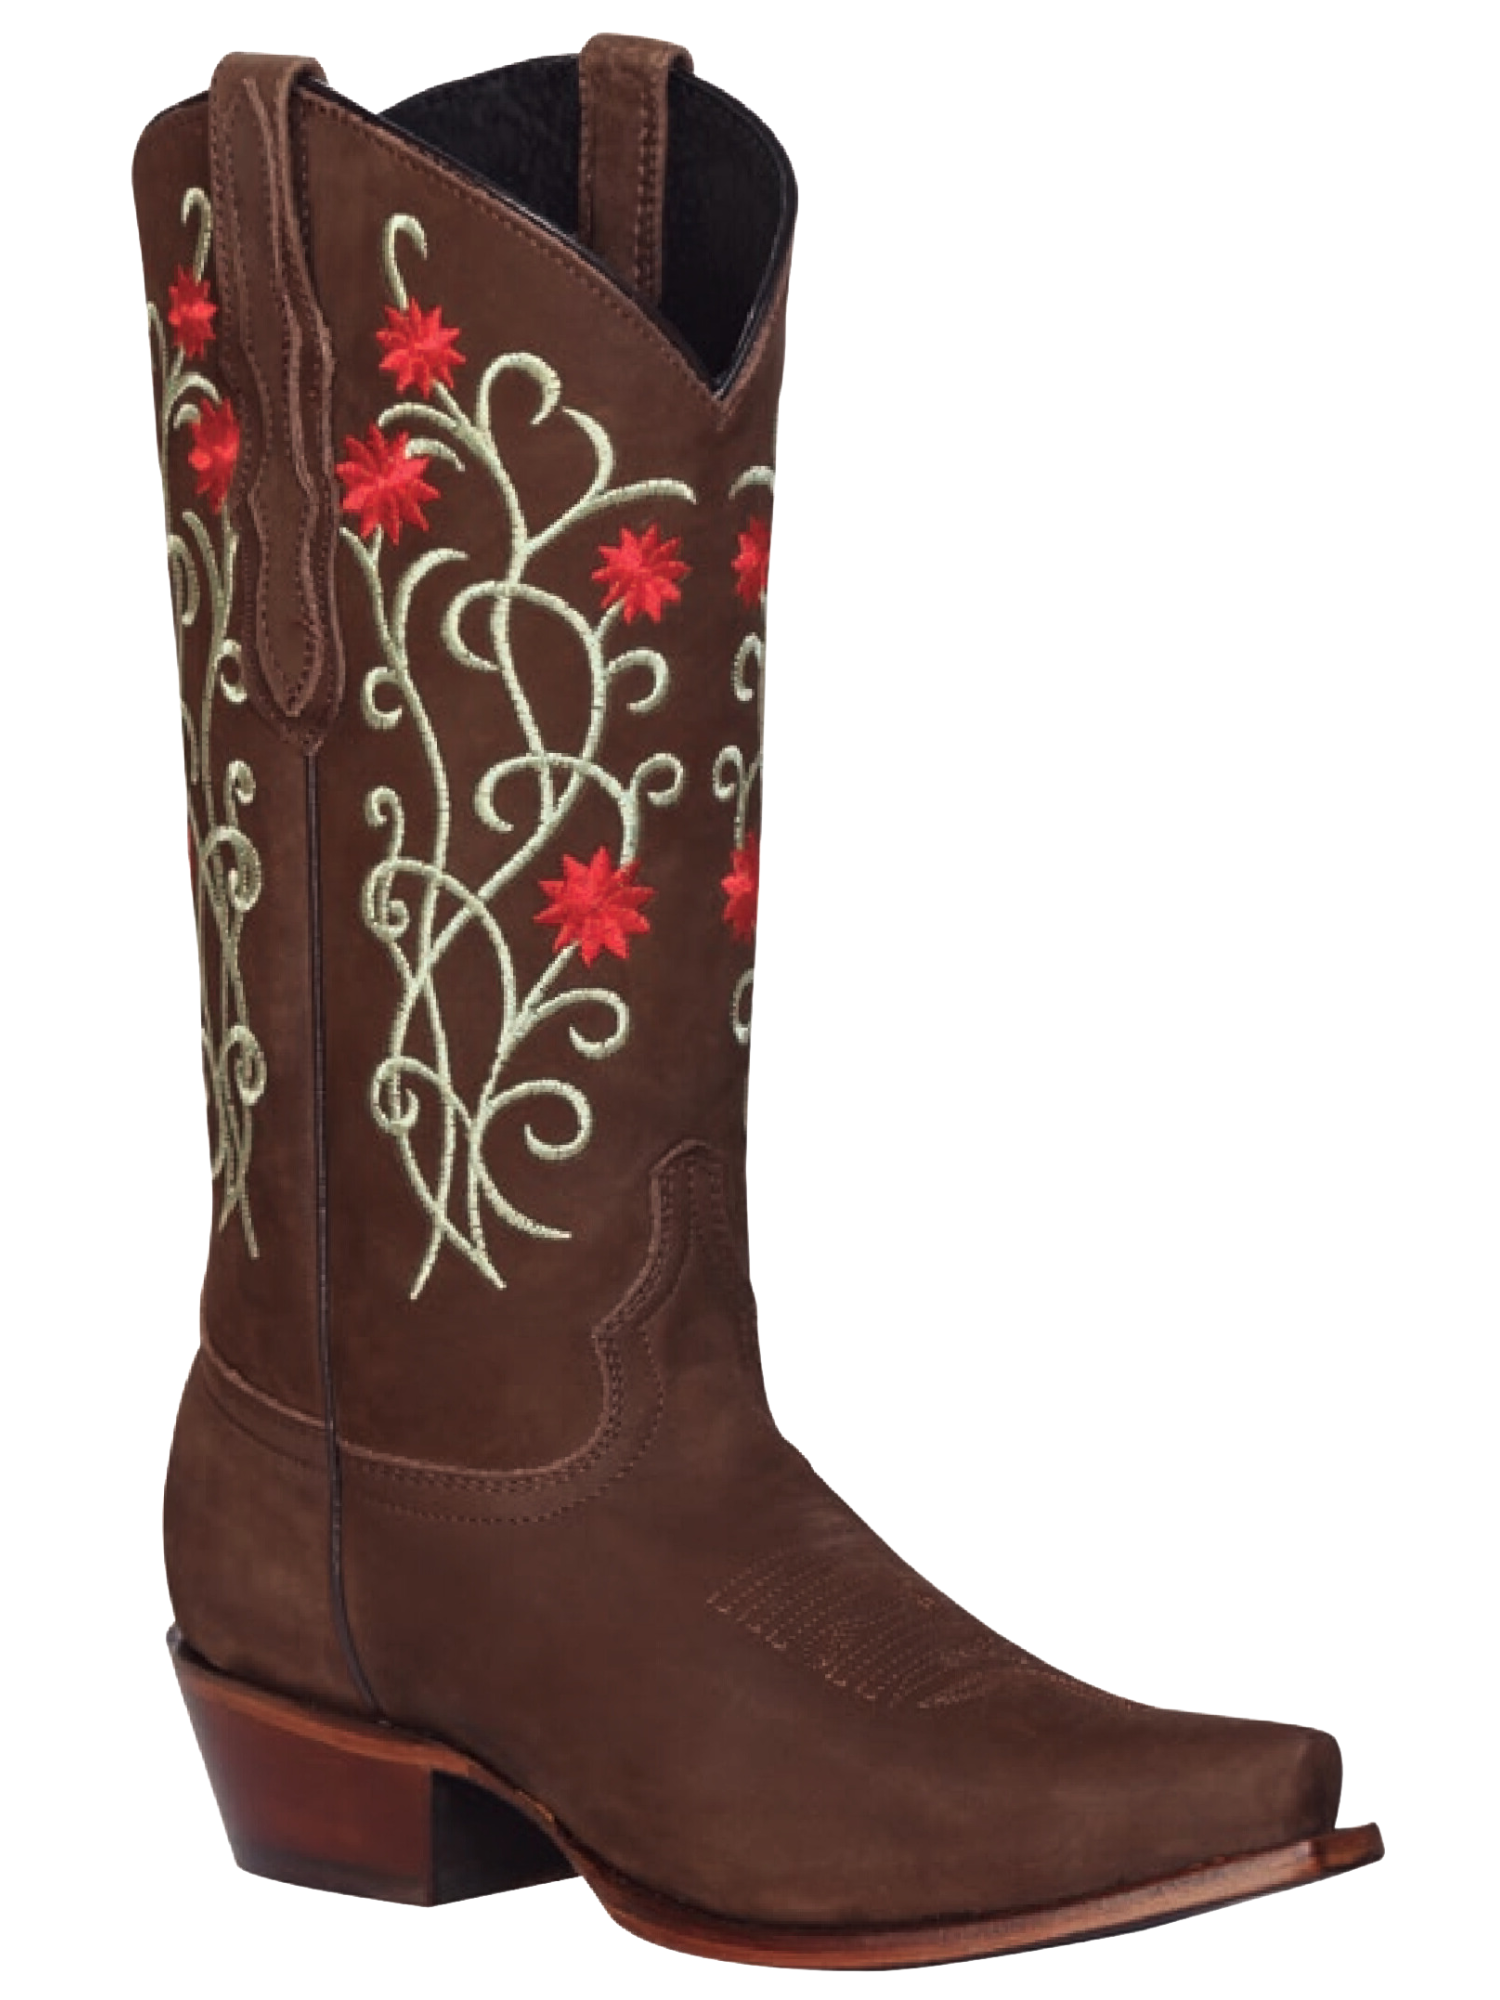 Botas Vaqueras Retro con Tubo Bordado de Flores de Piel Nobuck para Mujer 'El General' - ID: 41789 Cowgirl Boots El General 